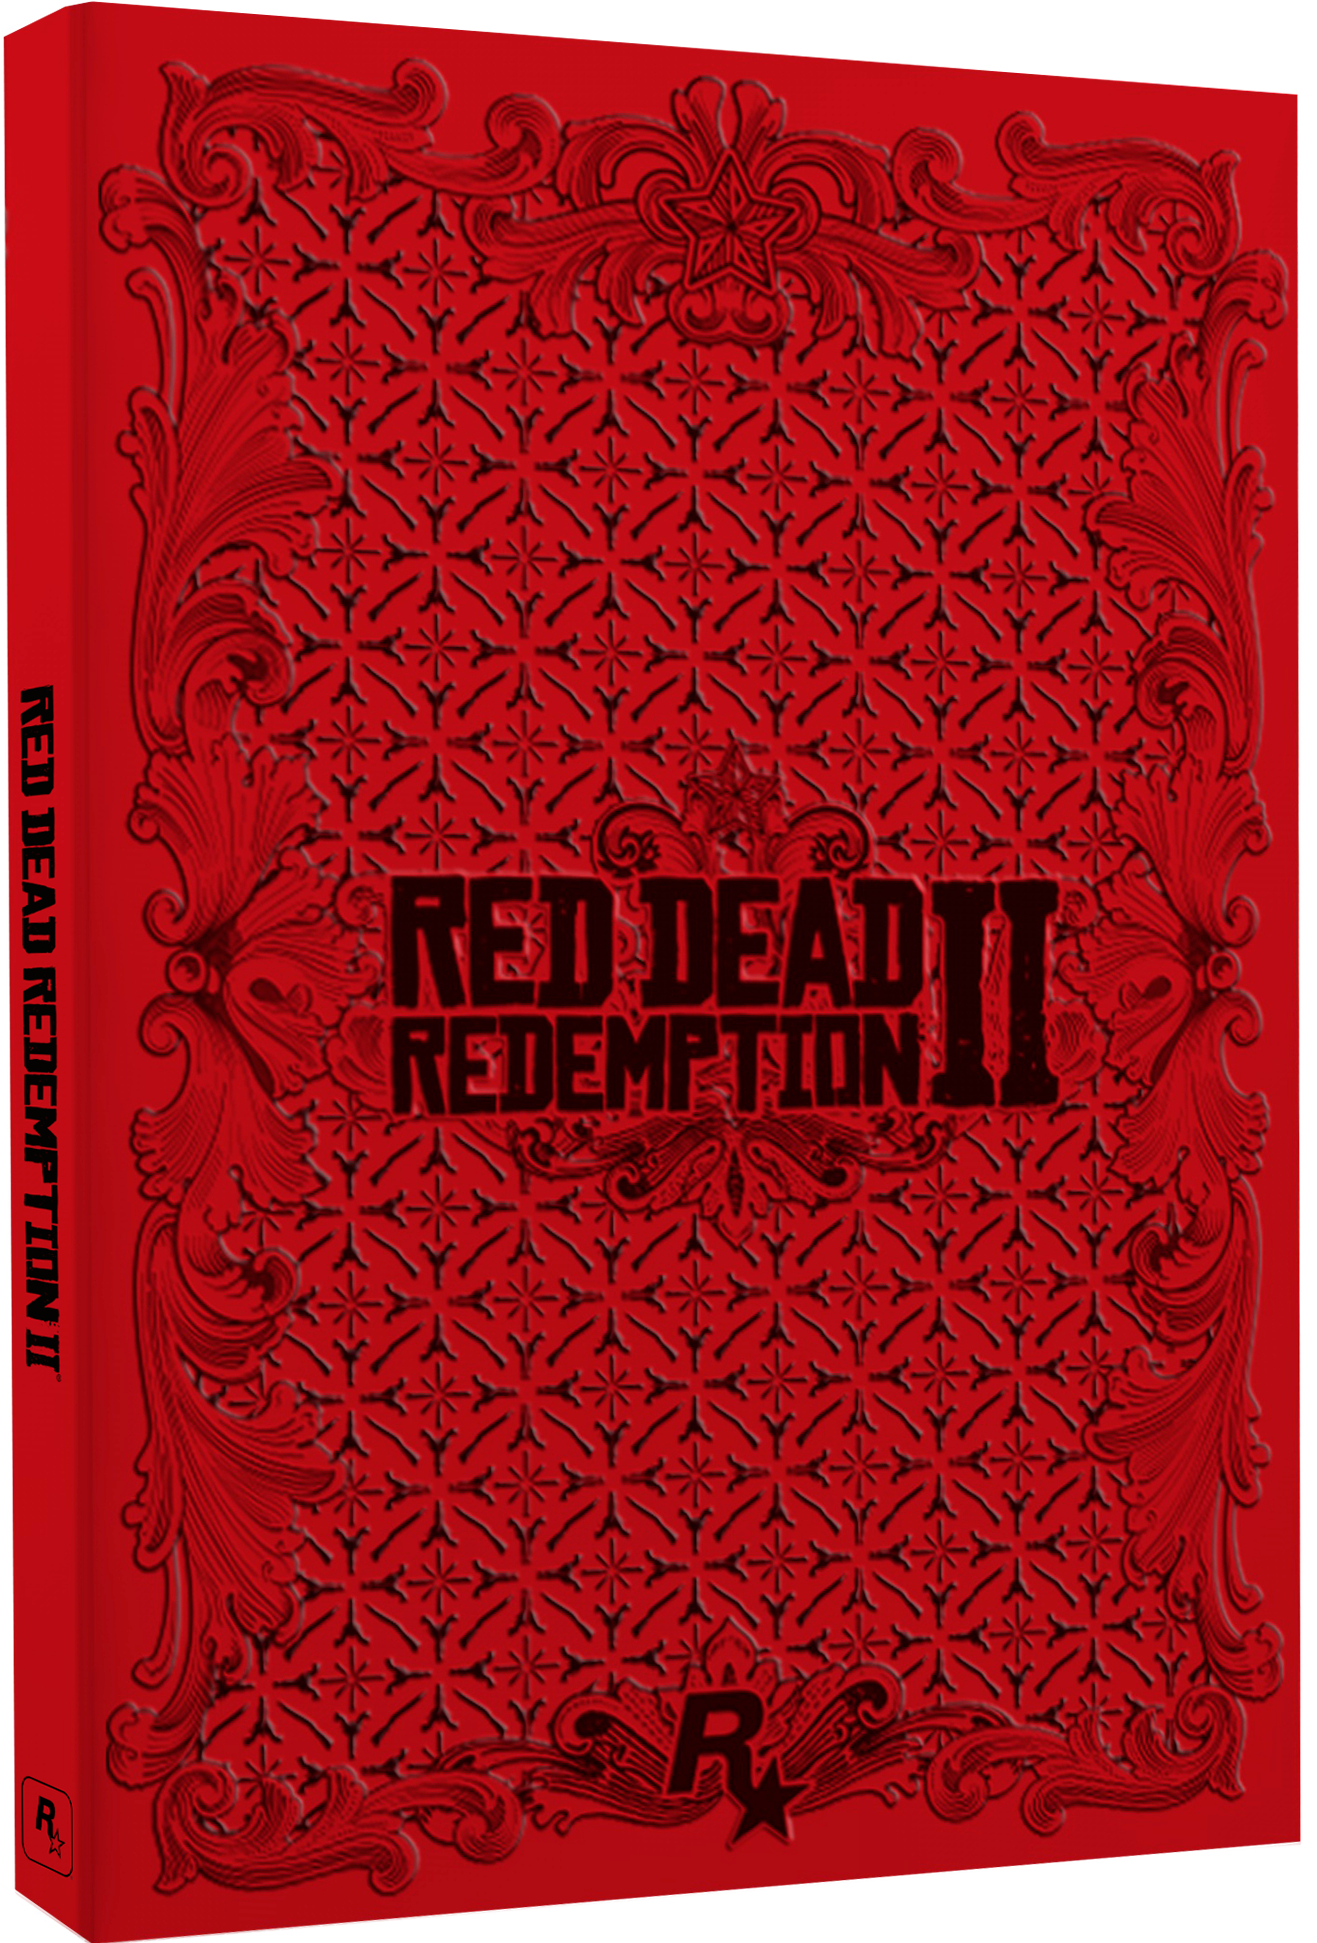 PS4 Red Dead 1+2 inklusive [PlayStation Steelbook Bundle 4] 